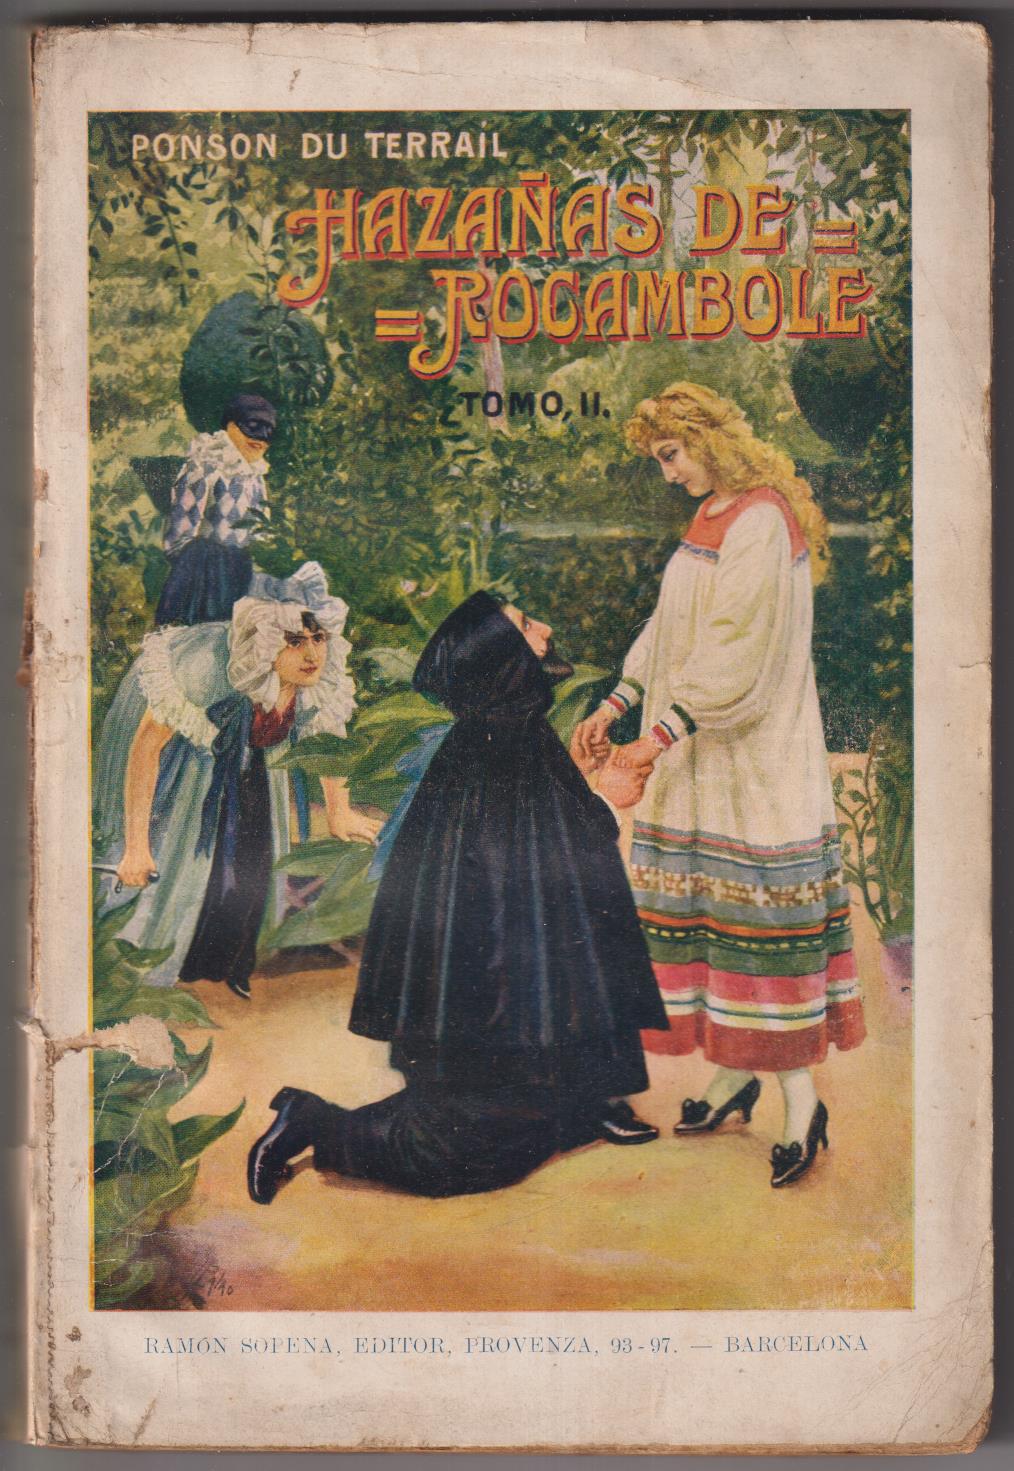 Ponson du Terrail. Hazañas de Rocambole To II. Biblioteca de Grandes Novelas. Sopena 1932